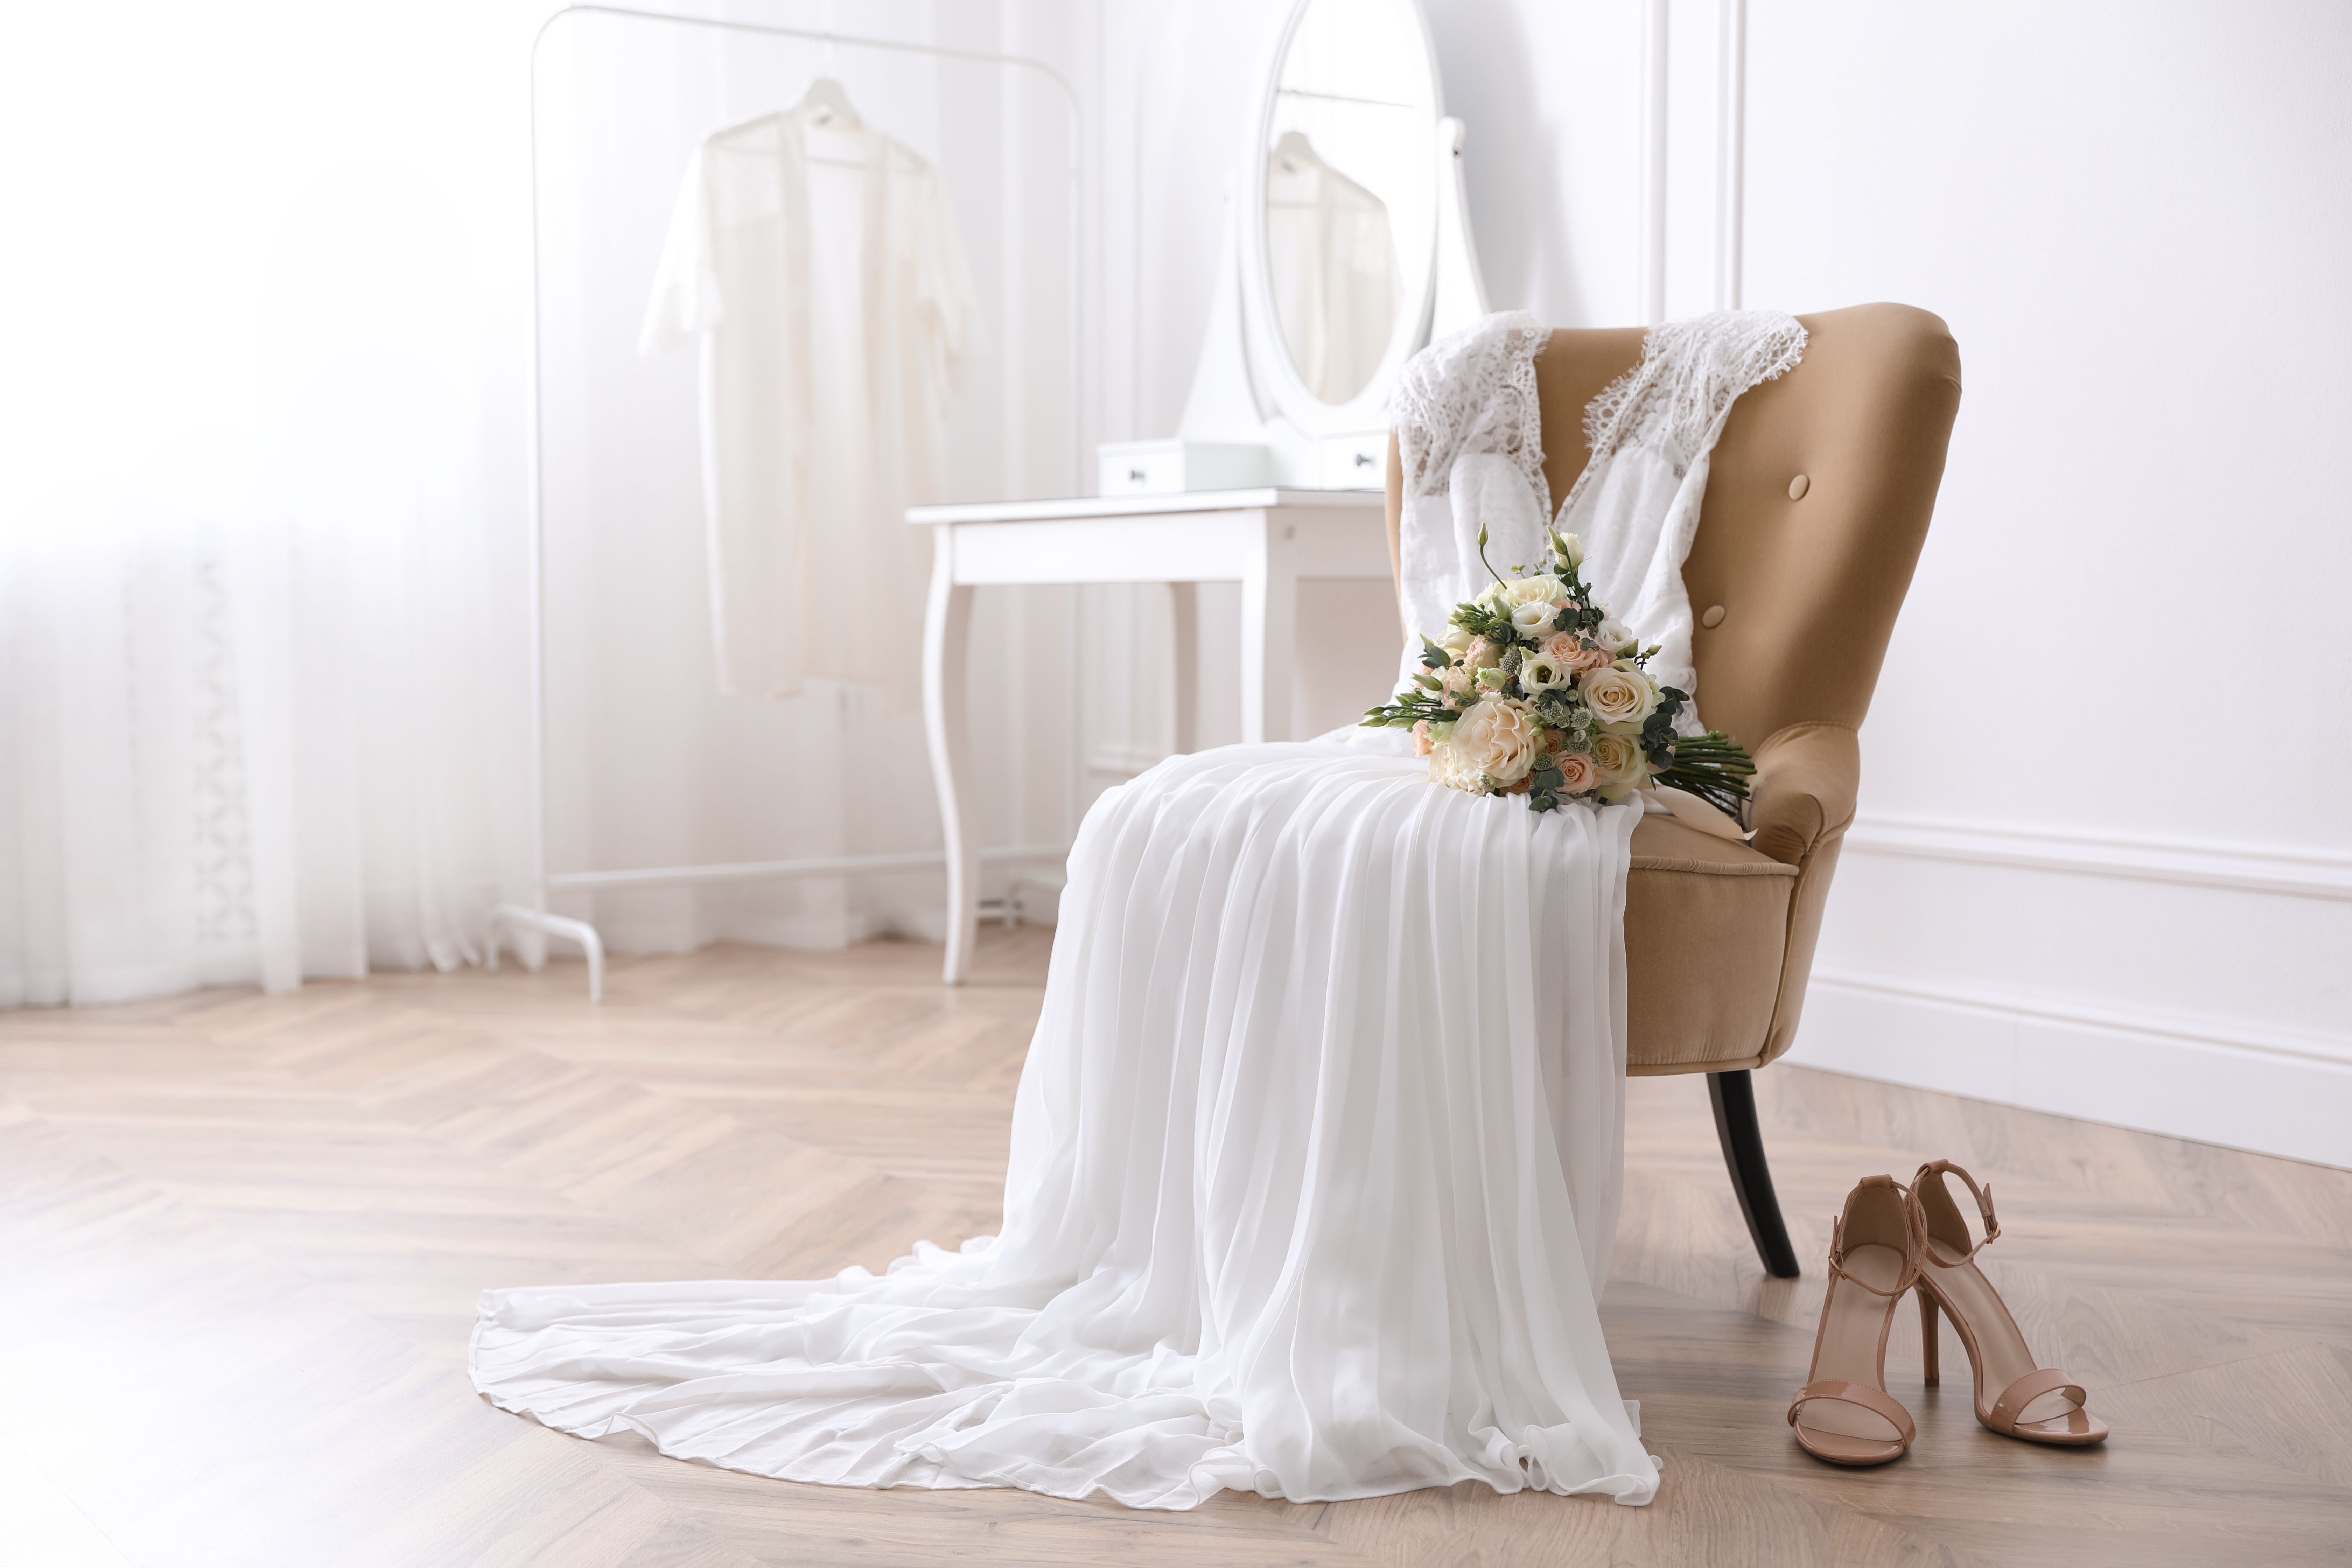 Une robe de mariée blanche sur une chaise et des chaussures à talons hauts sur le sol. | Source : Shutterstock